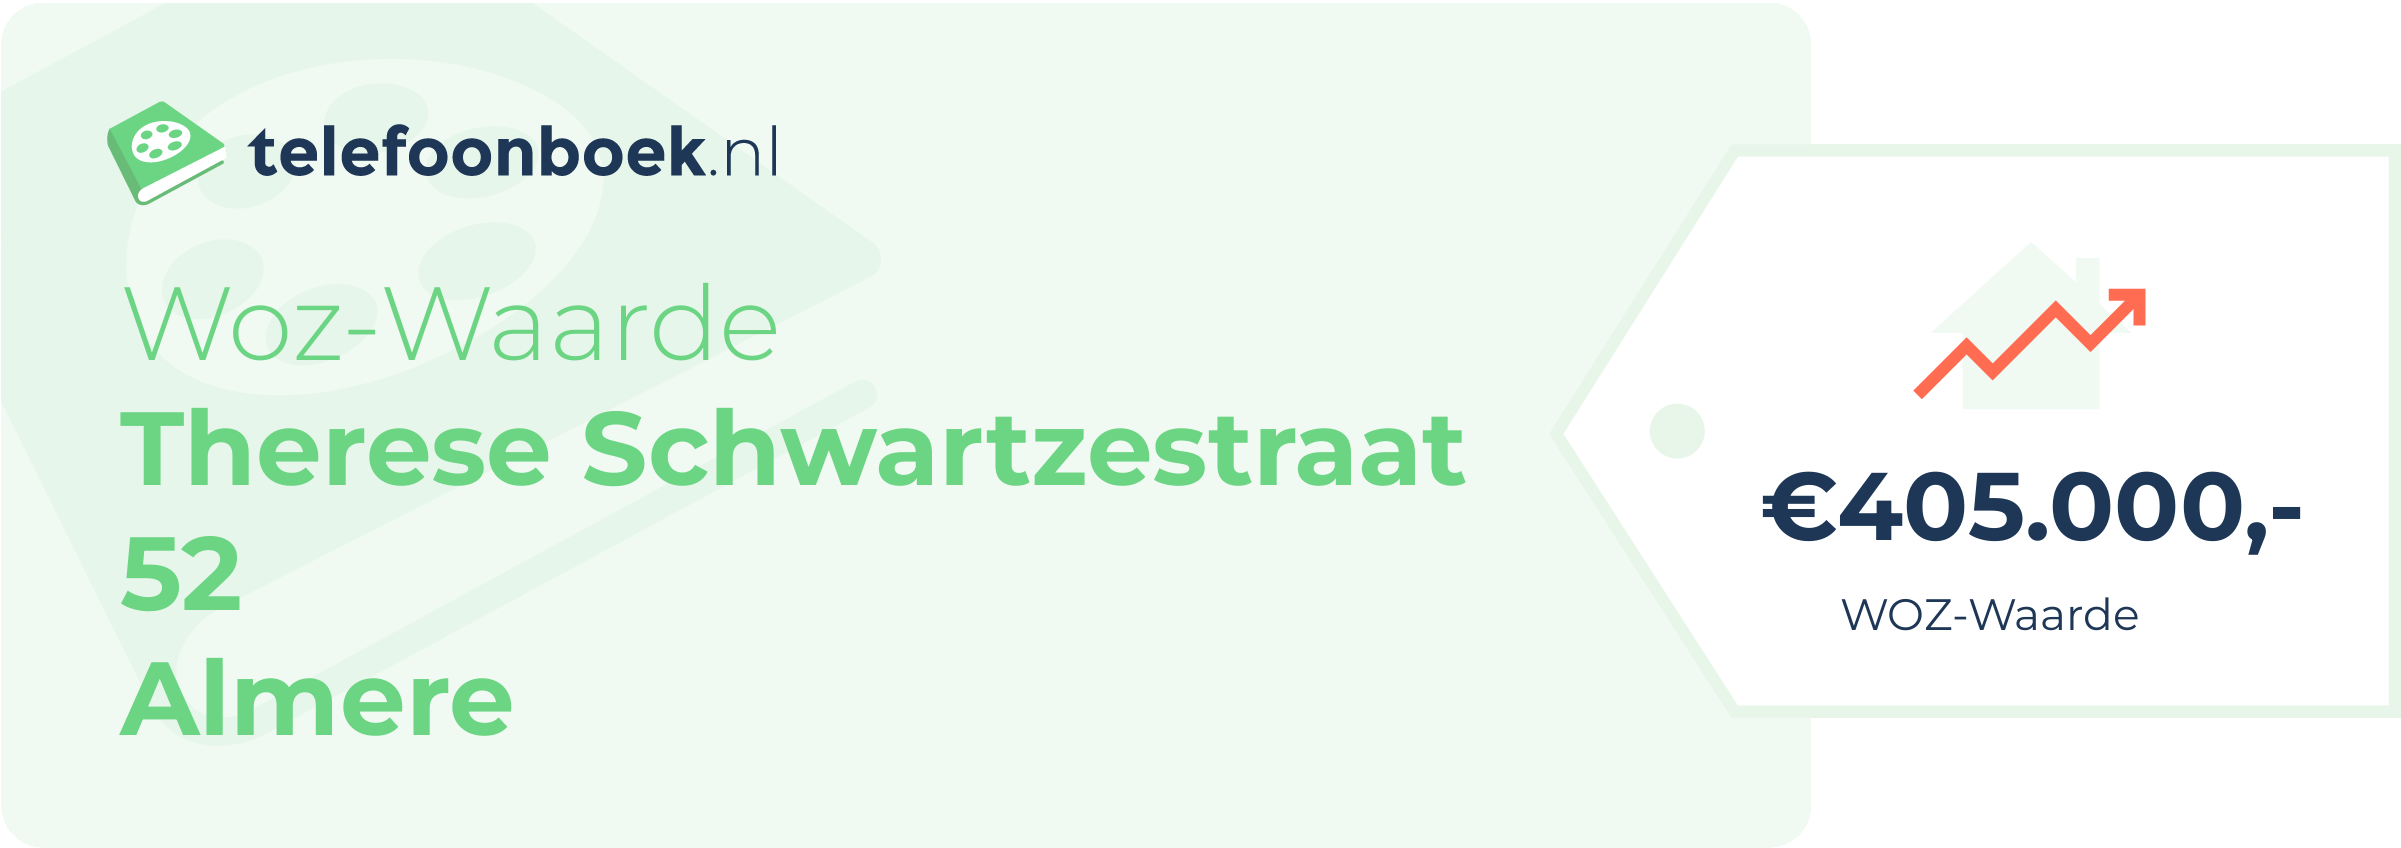 WOZ-waarde Therese Schwartzestraat 52 Almere